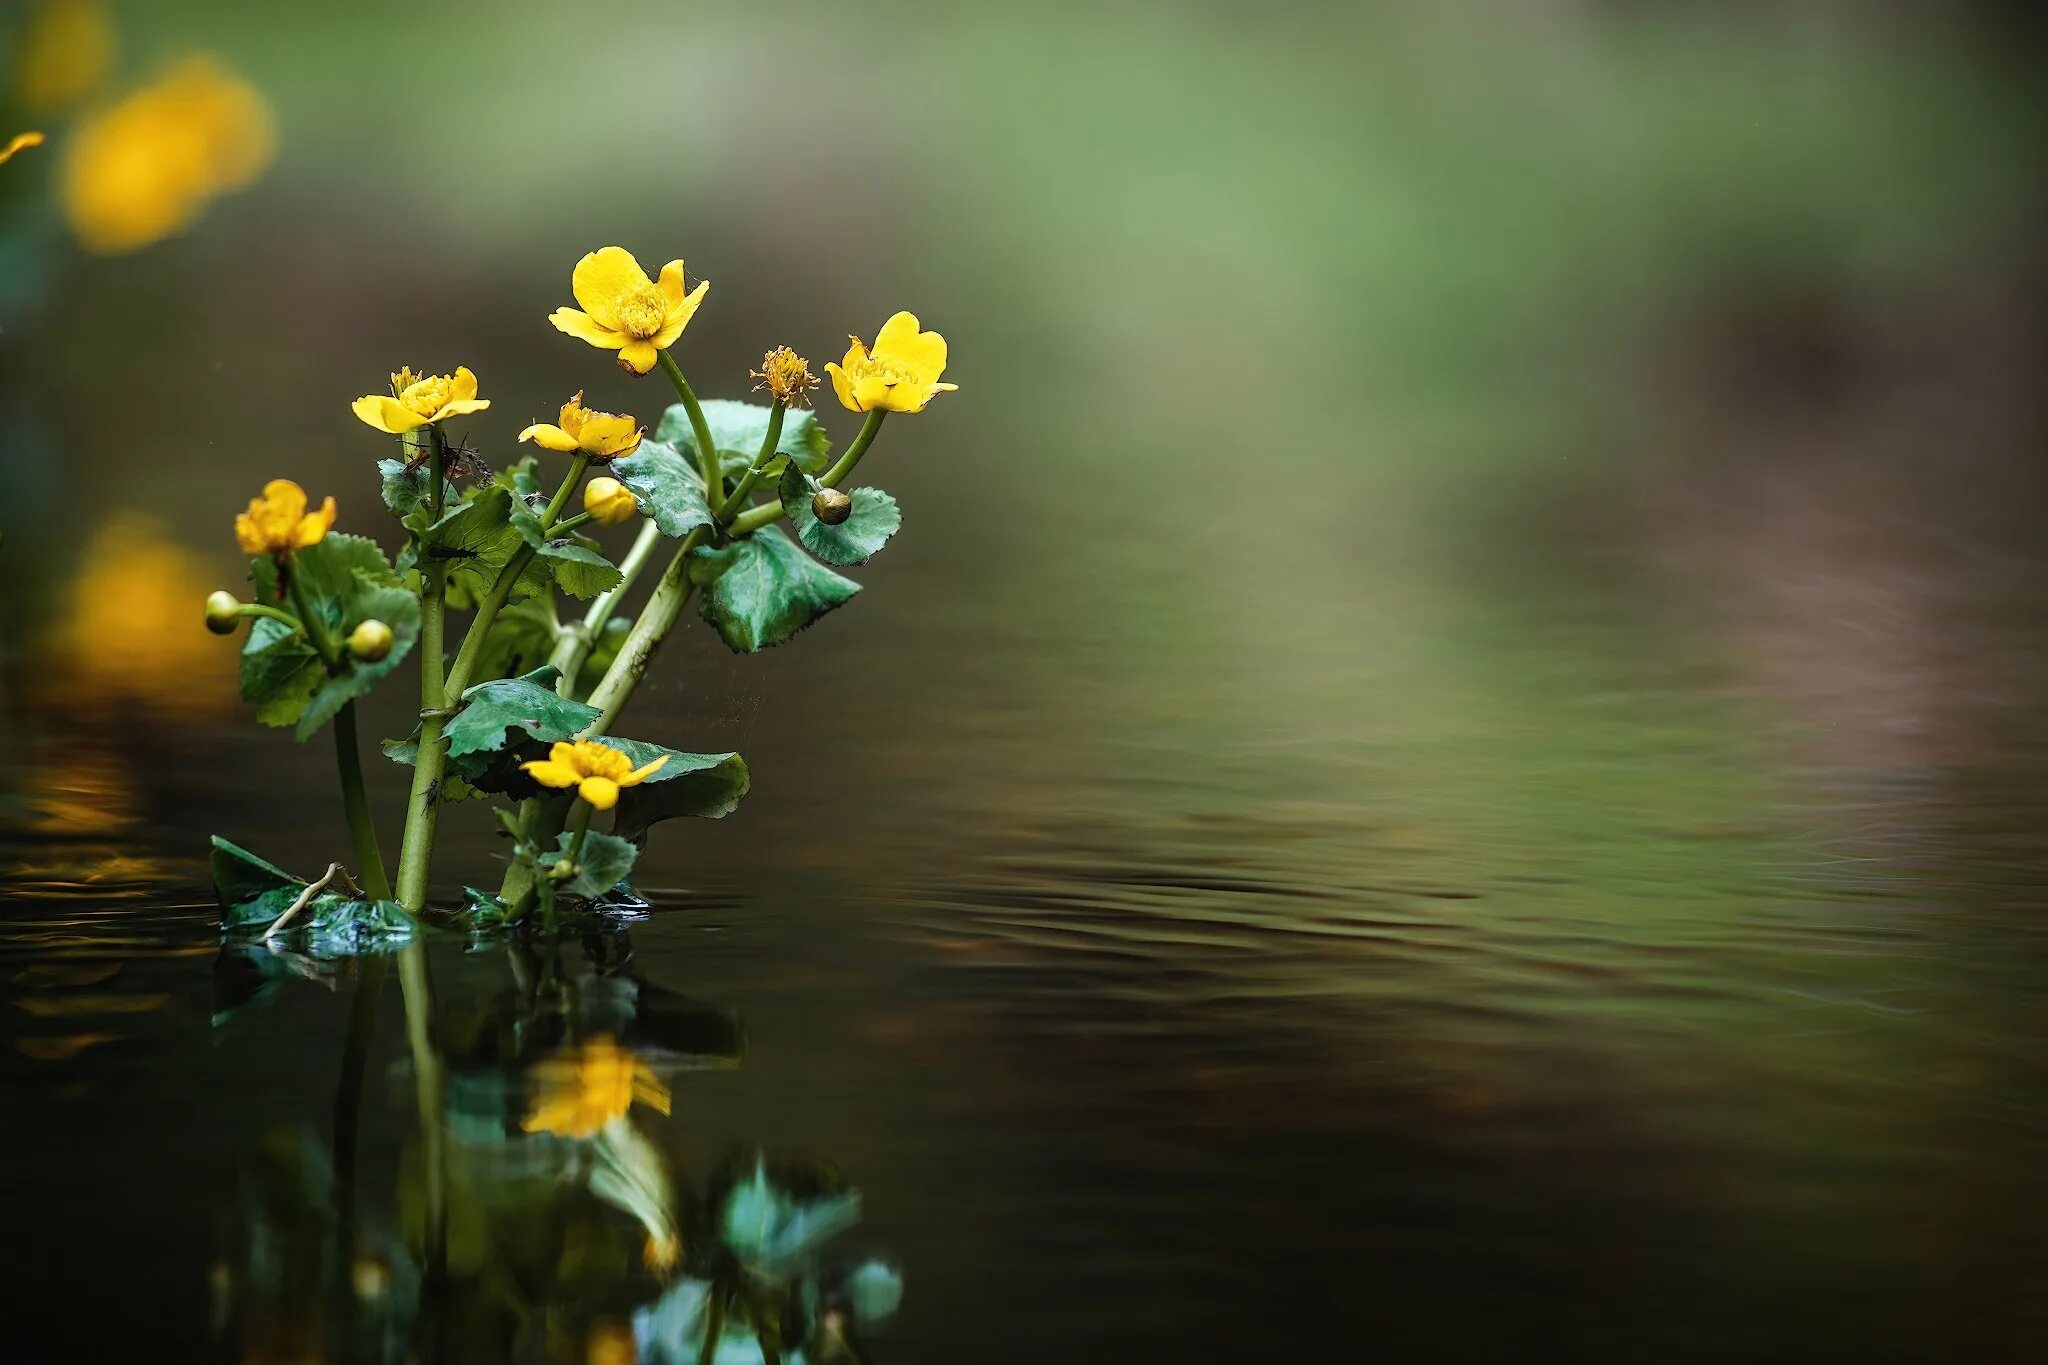 Река Рыкуша. Желтый цветок в реке весной. Цветы у реки. Мост, цветы, речка.